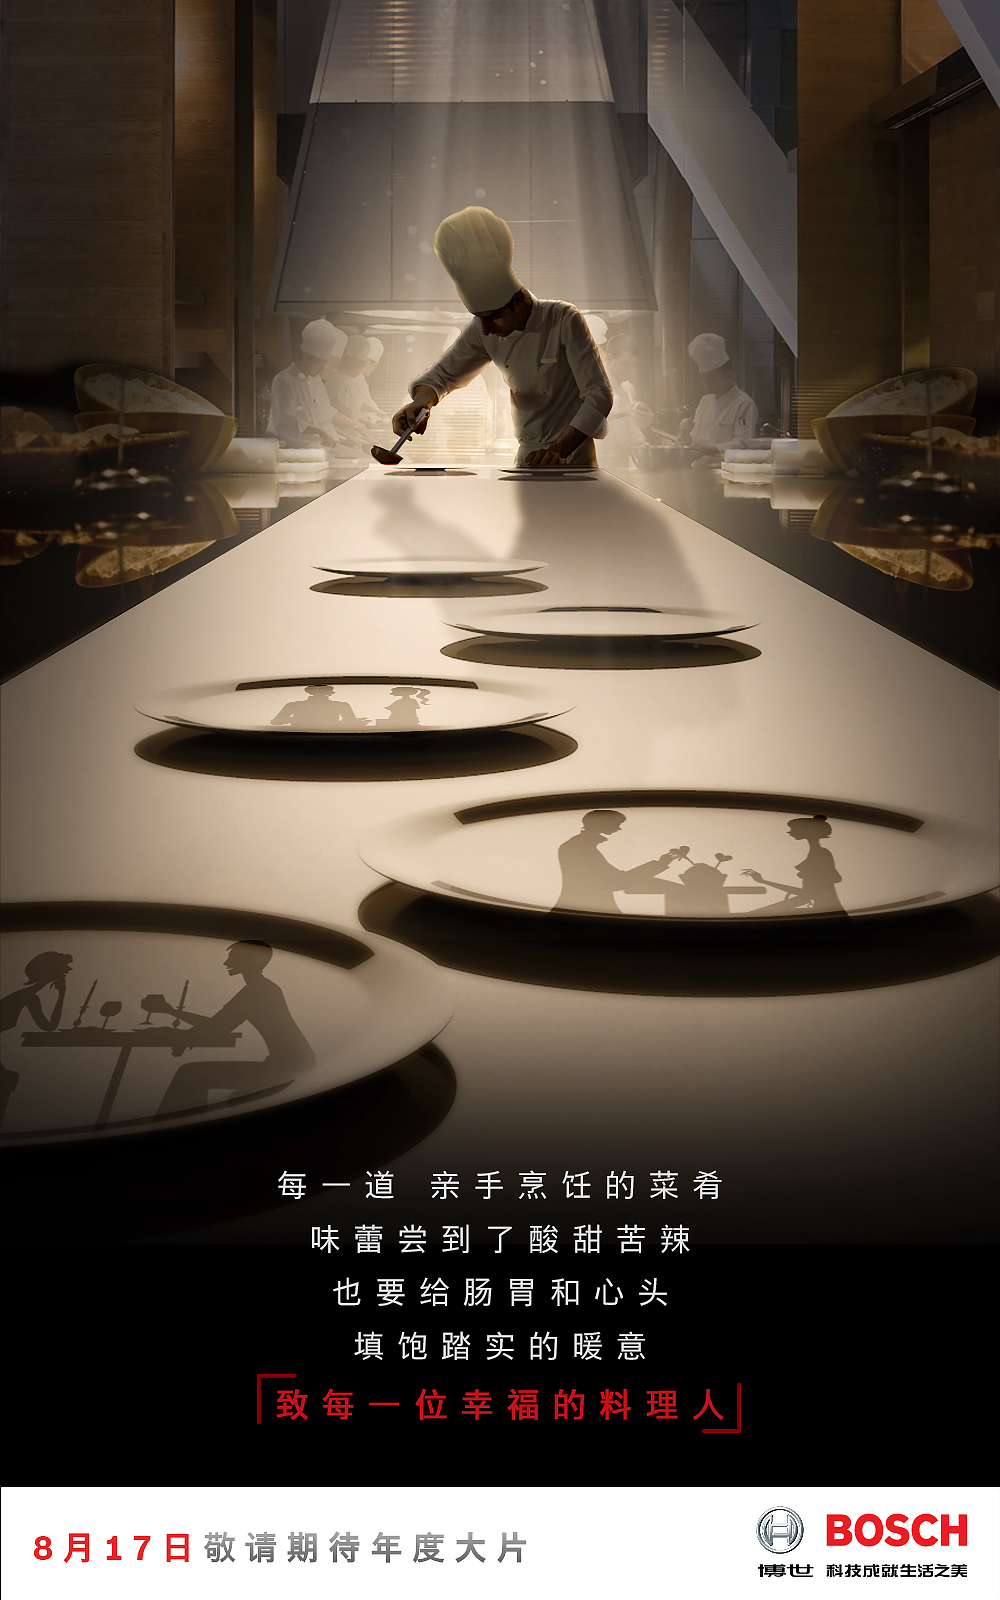 博世中国品牌宣传片《忘了我》